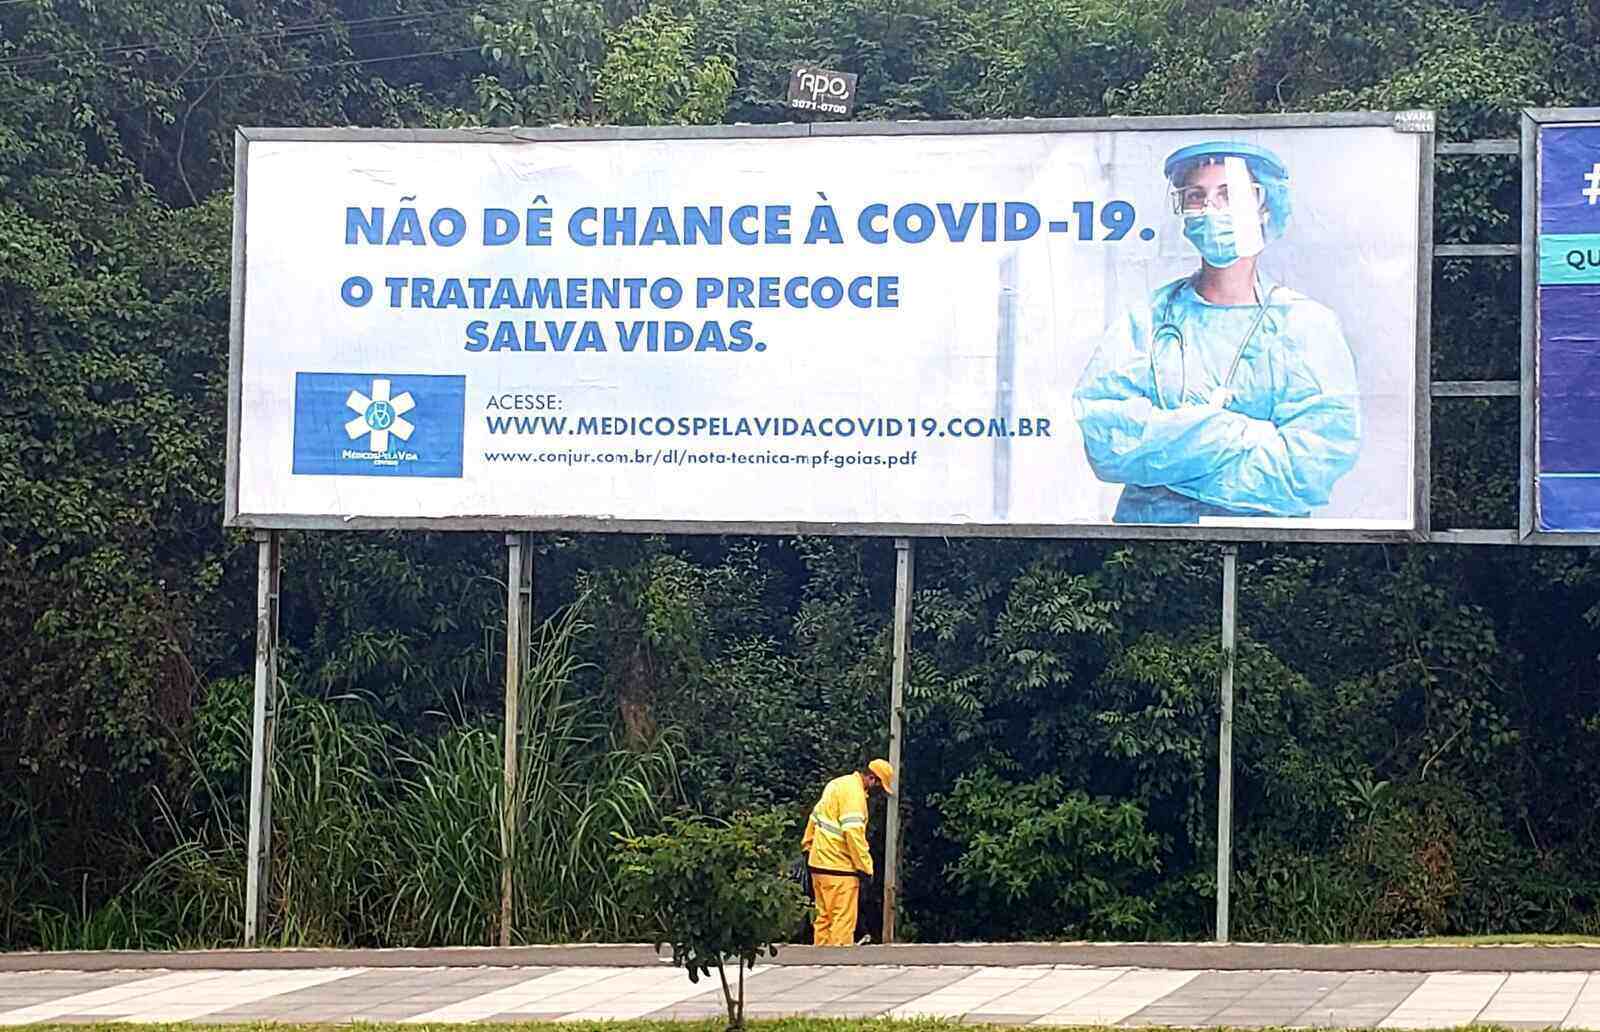 Grupo de médicos espalha outdoors de tratamento precoce contra covid em Curitiba